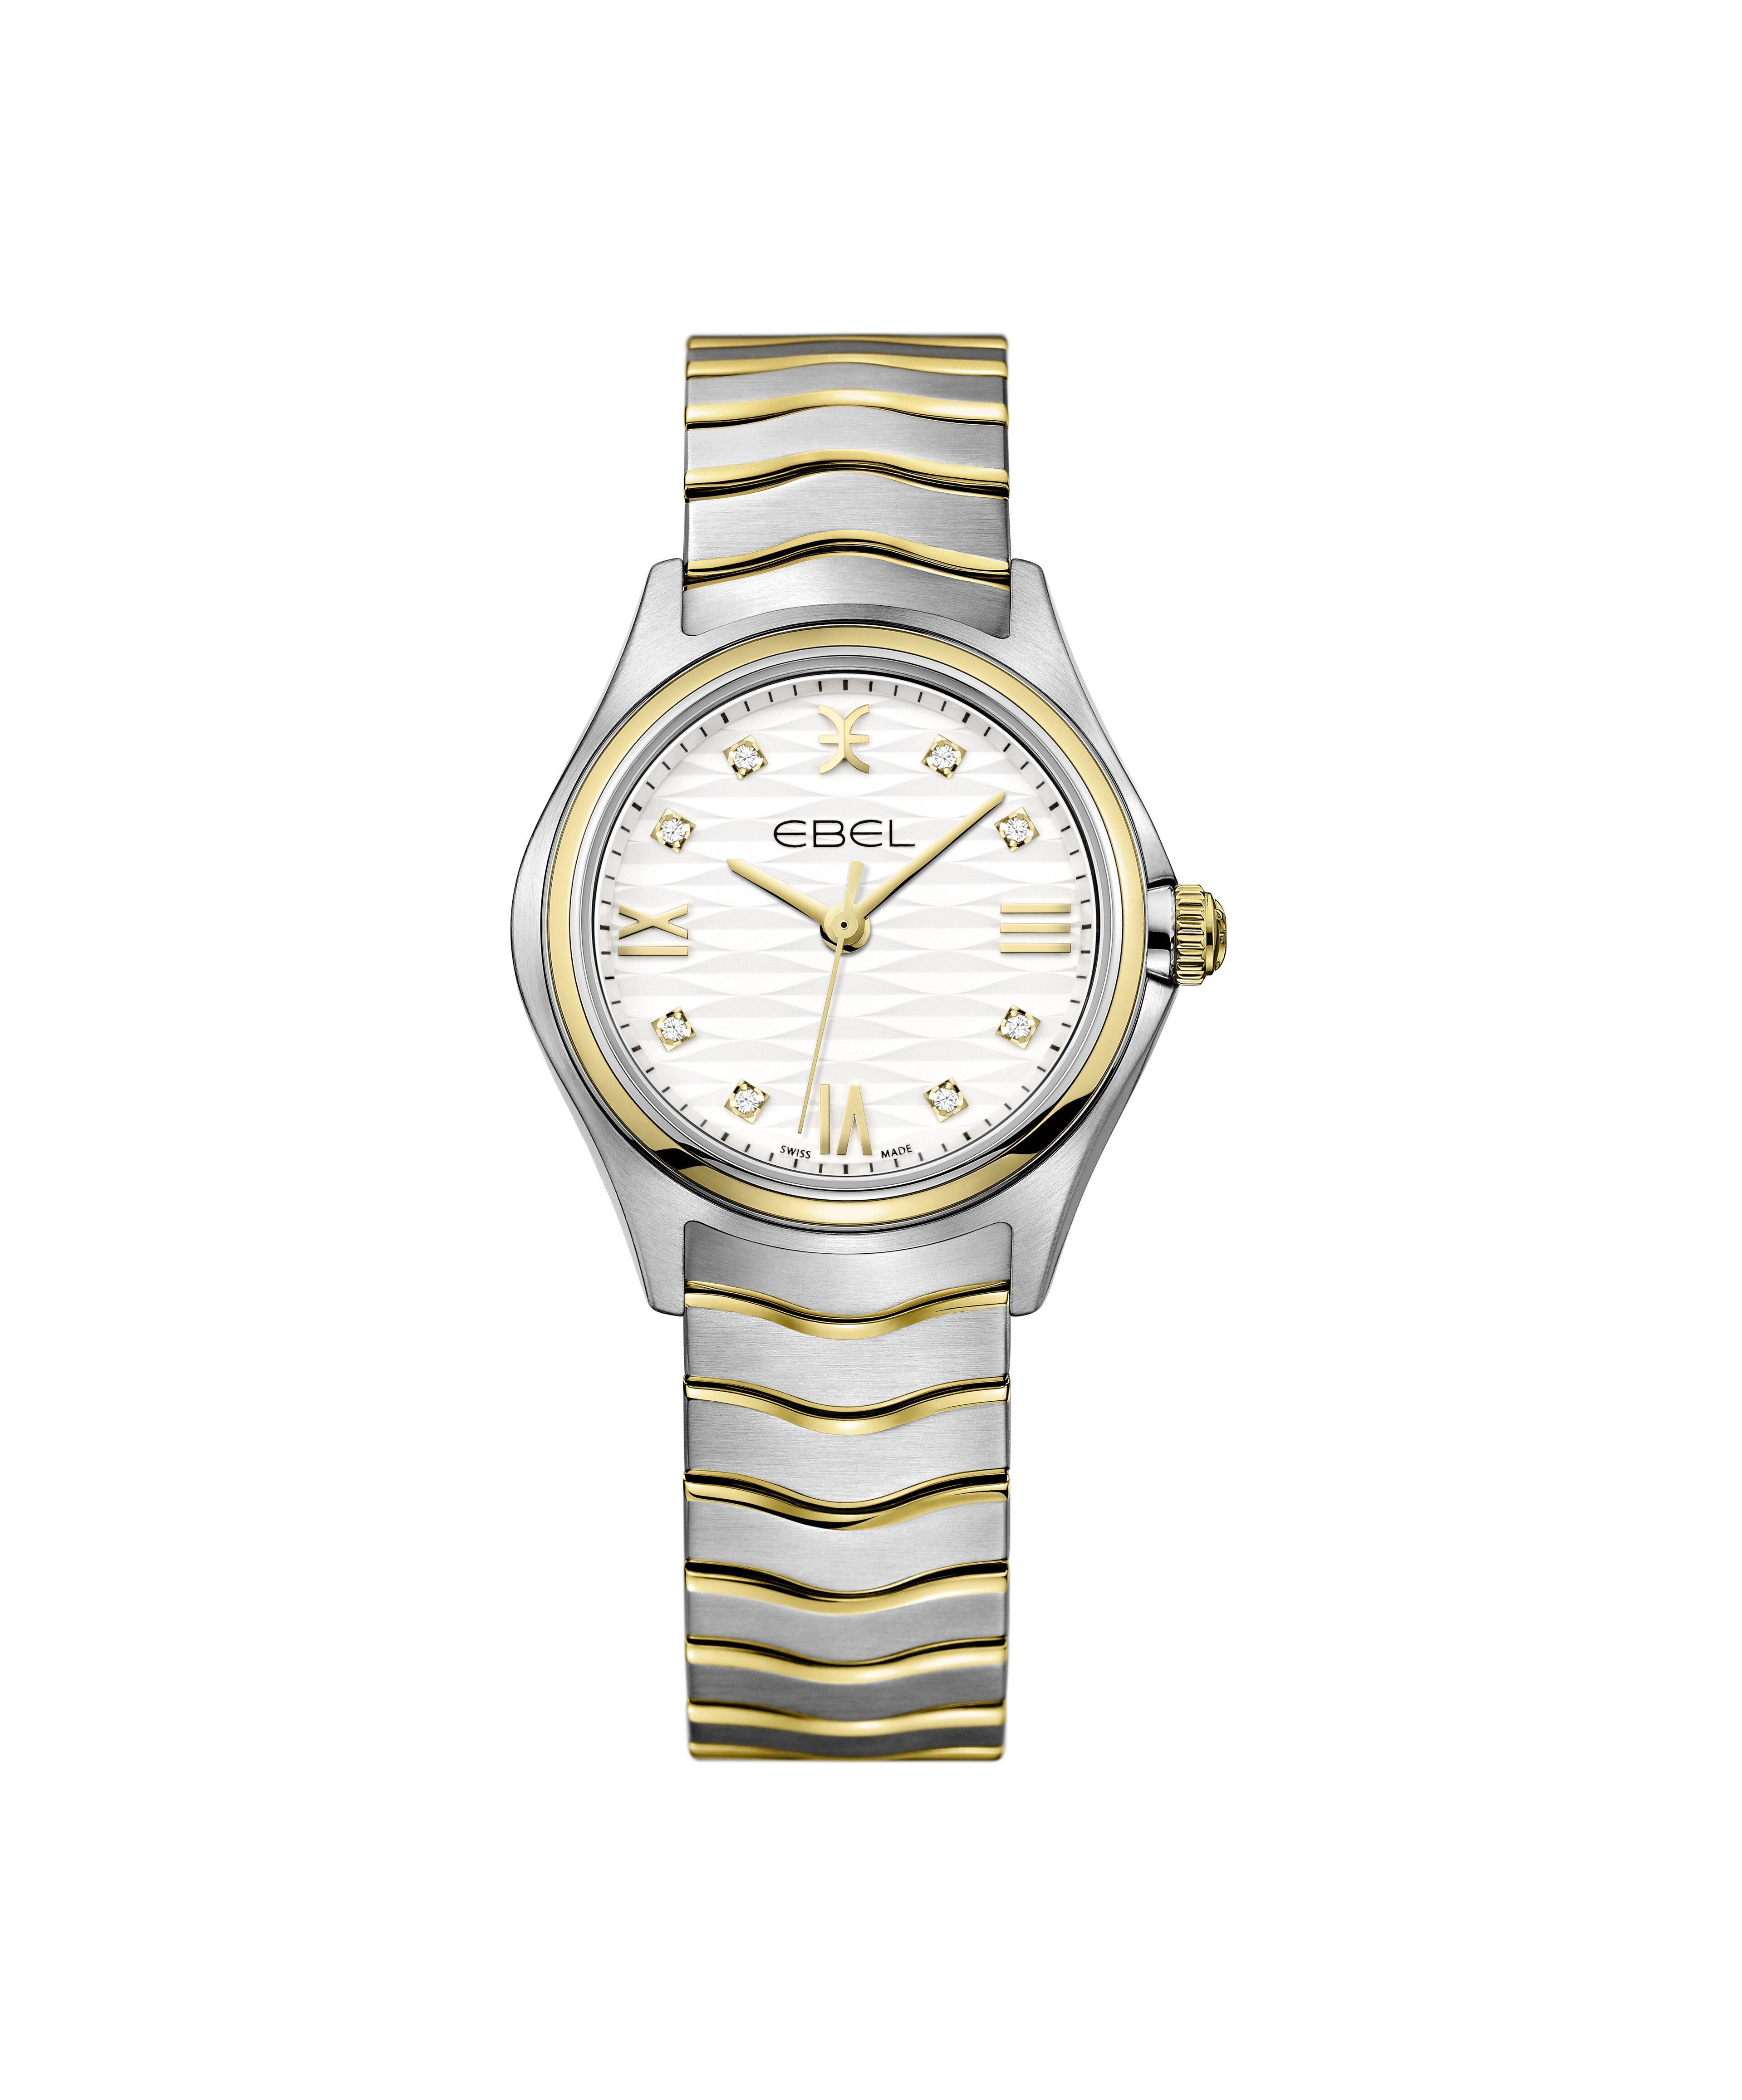 Luxury Swiss Watch Replicas